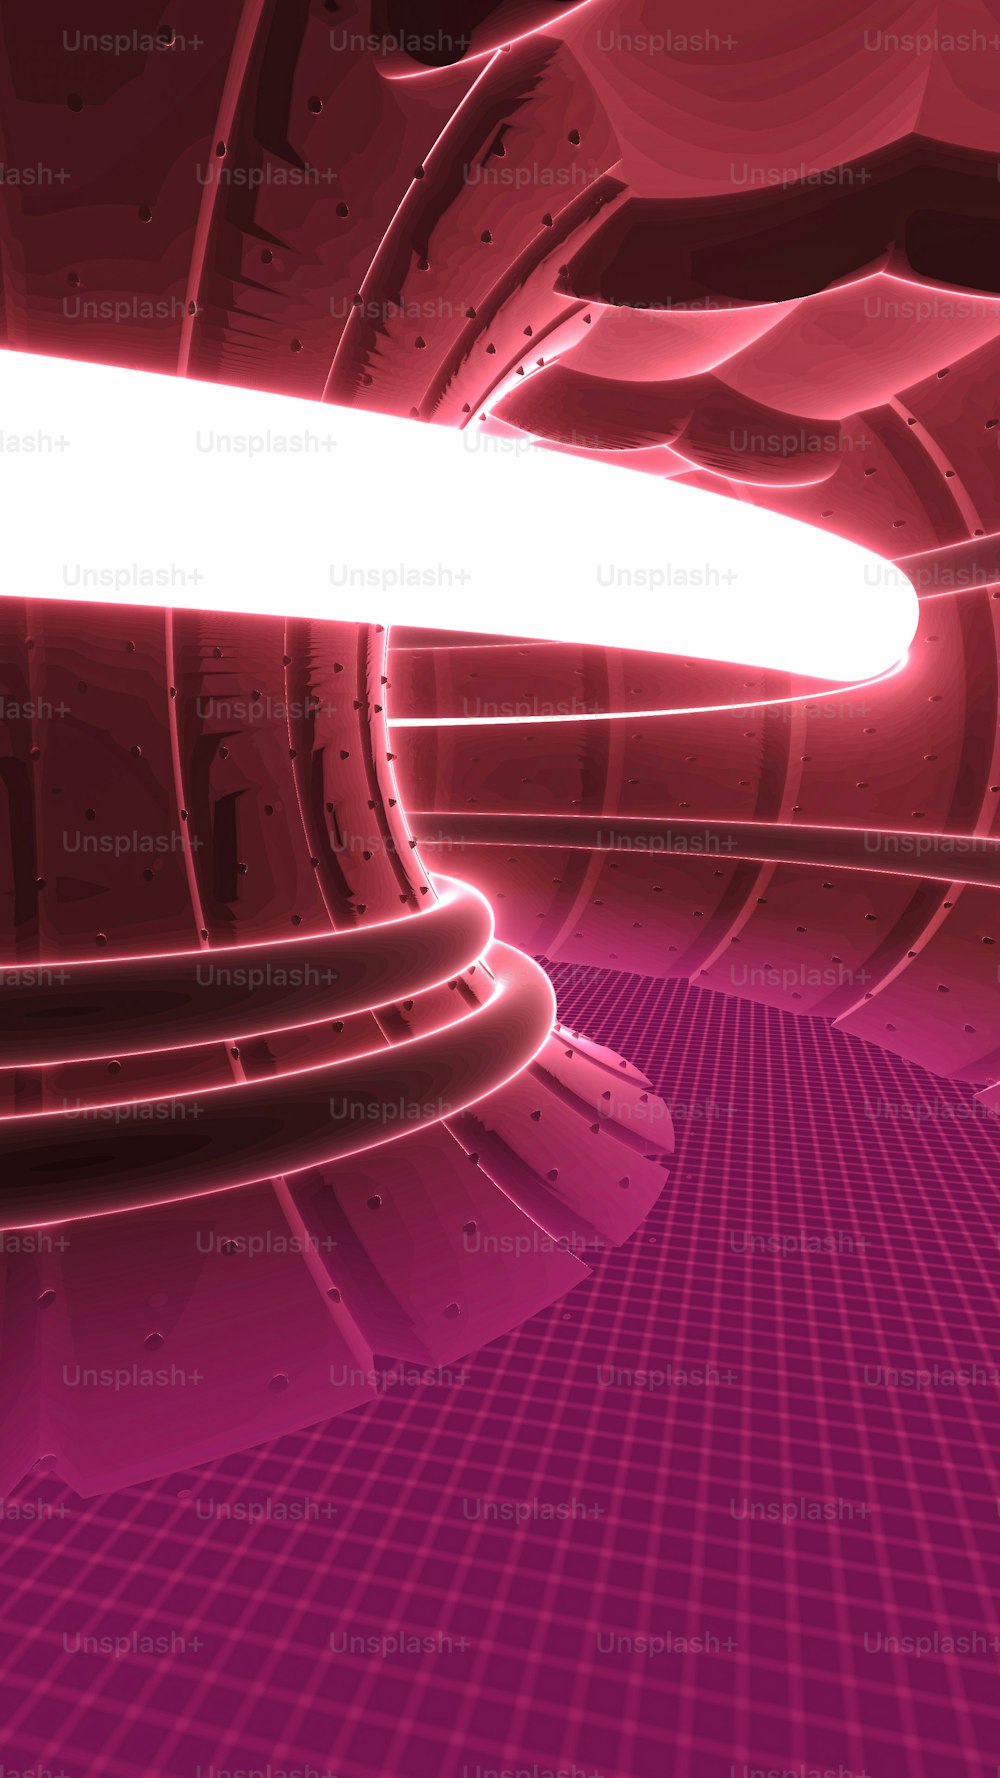 Un'immagine astratta di un tunnel rosa e viola